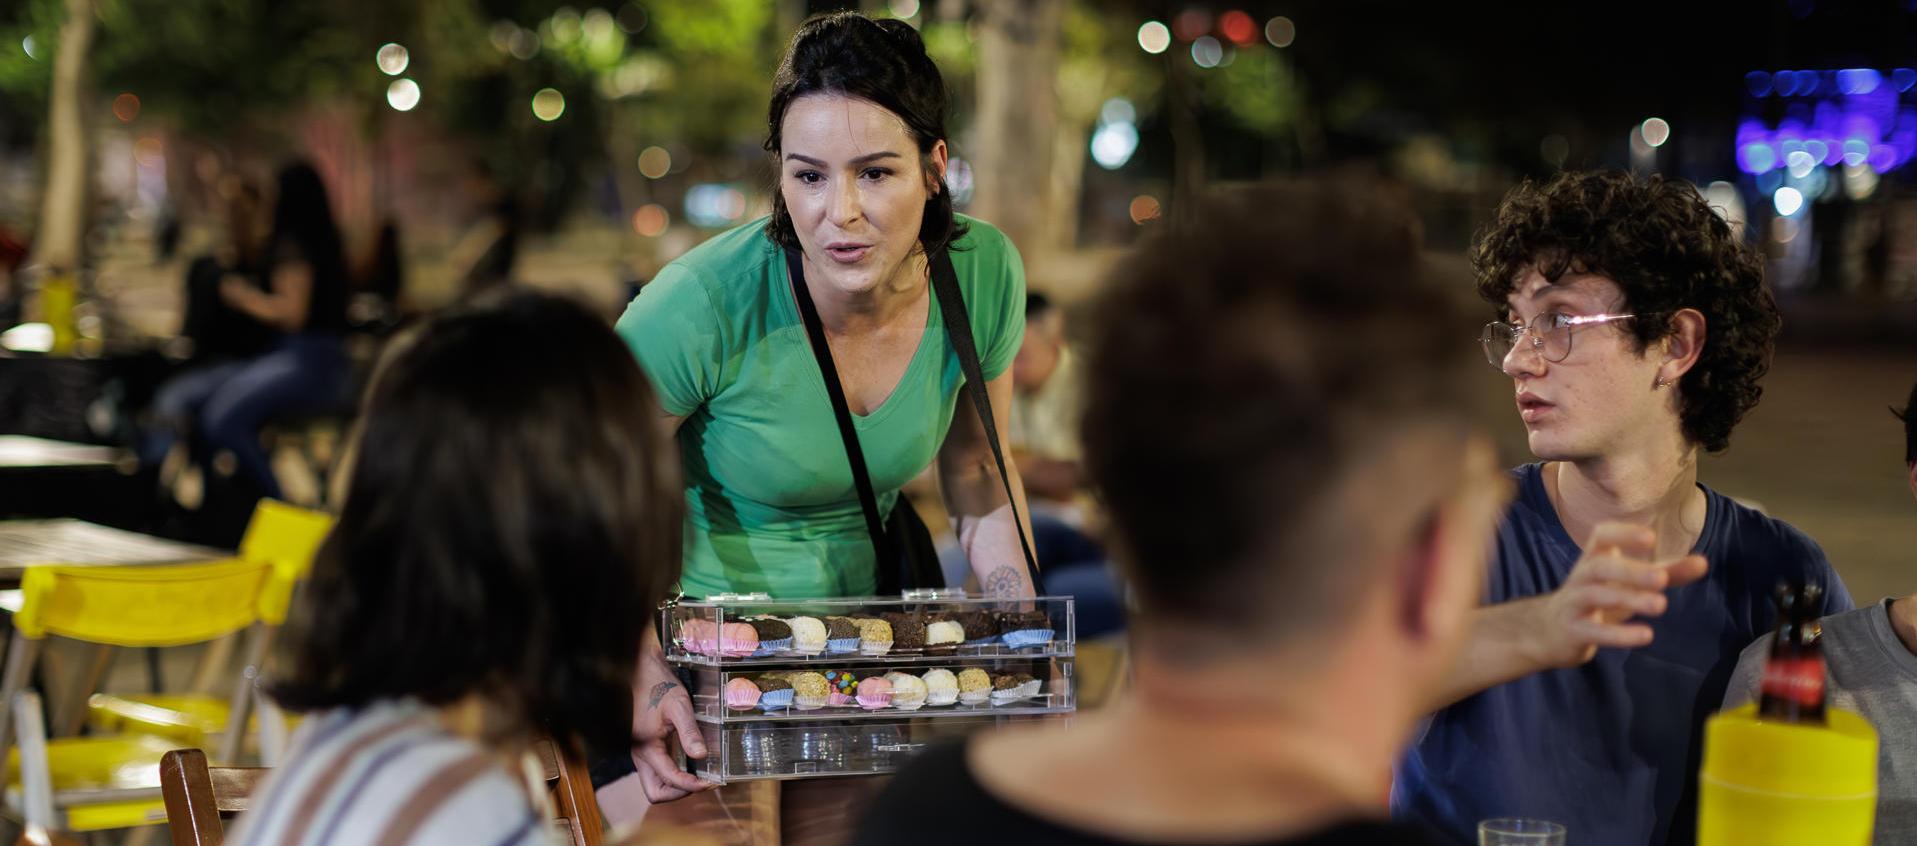 Una mujer trabaja vendiendo dulces en la ciudad de Sao Paulo, Brasil.